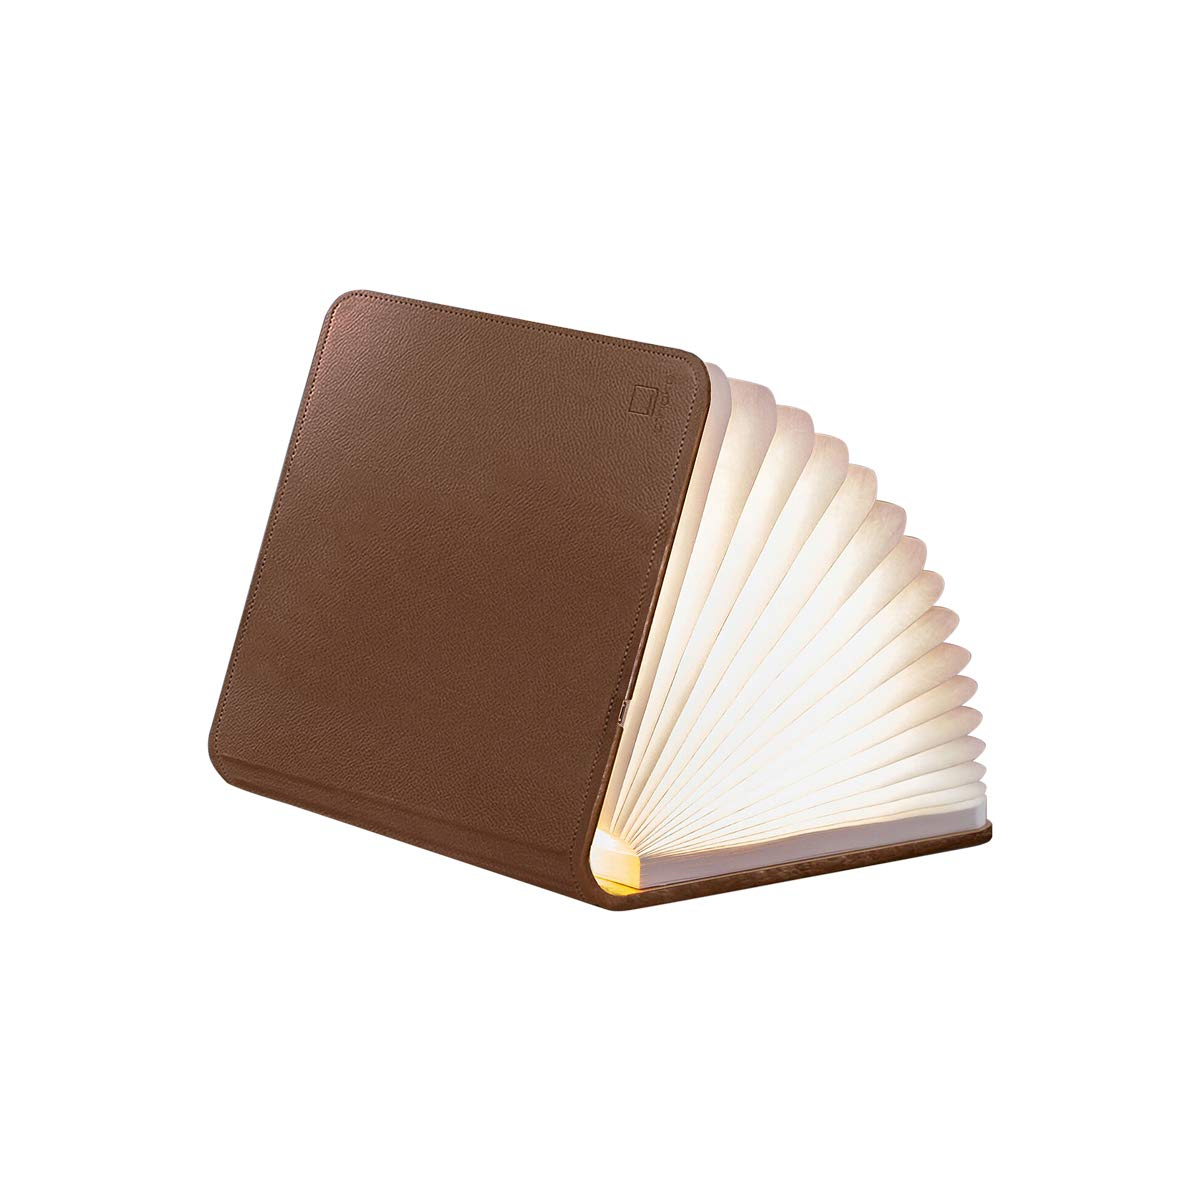 Összecsukható lámpa "Smart Book" mini, barna bőr - Gingko